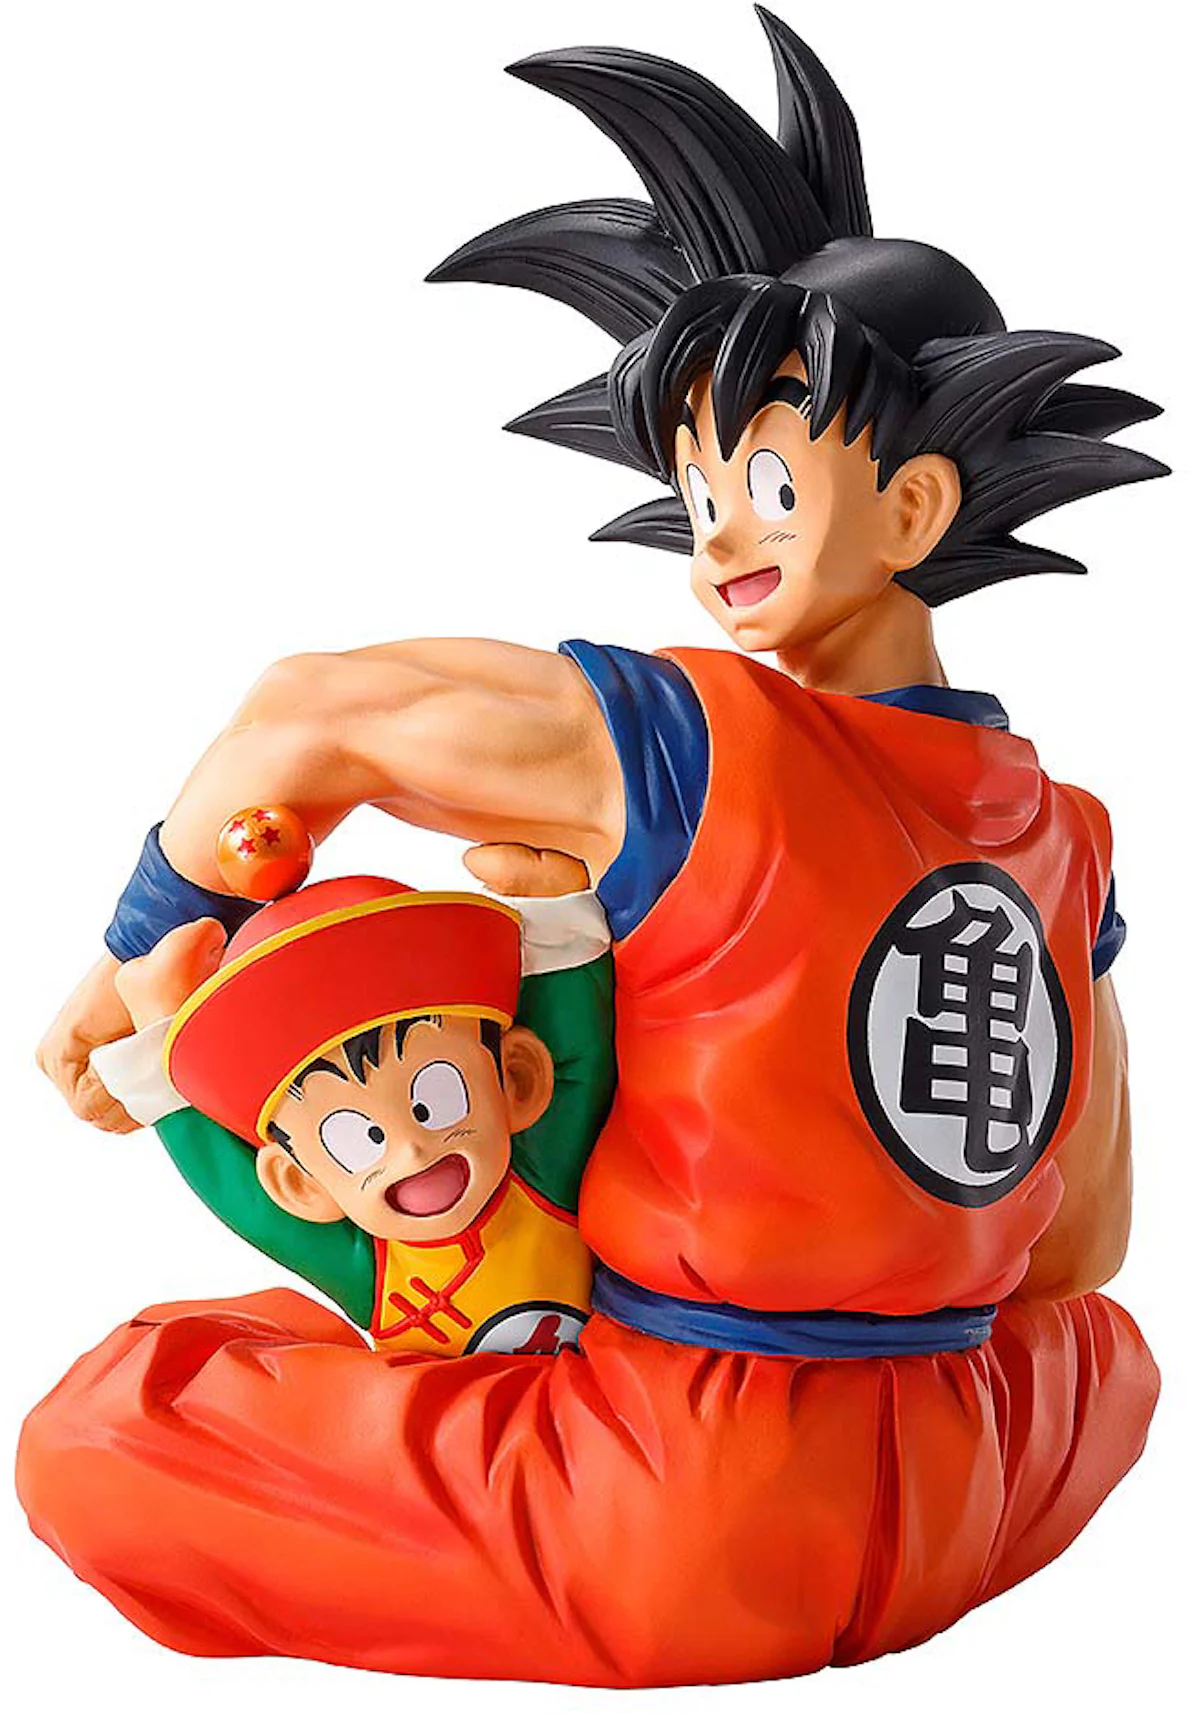 Bandai Ichibansho Dragon Ball Z Goku And Gohan Action Figure